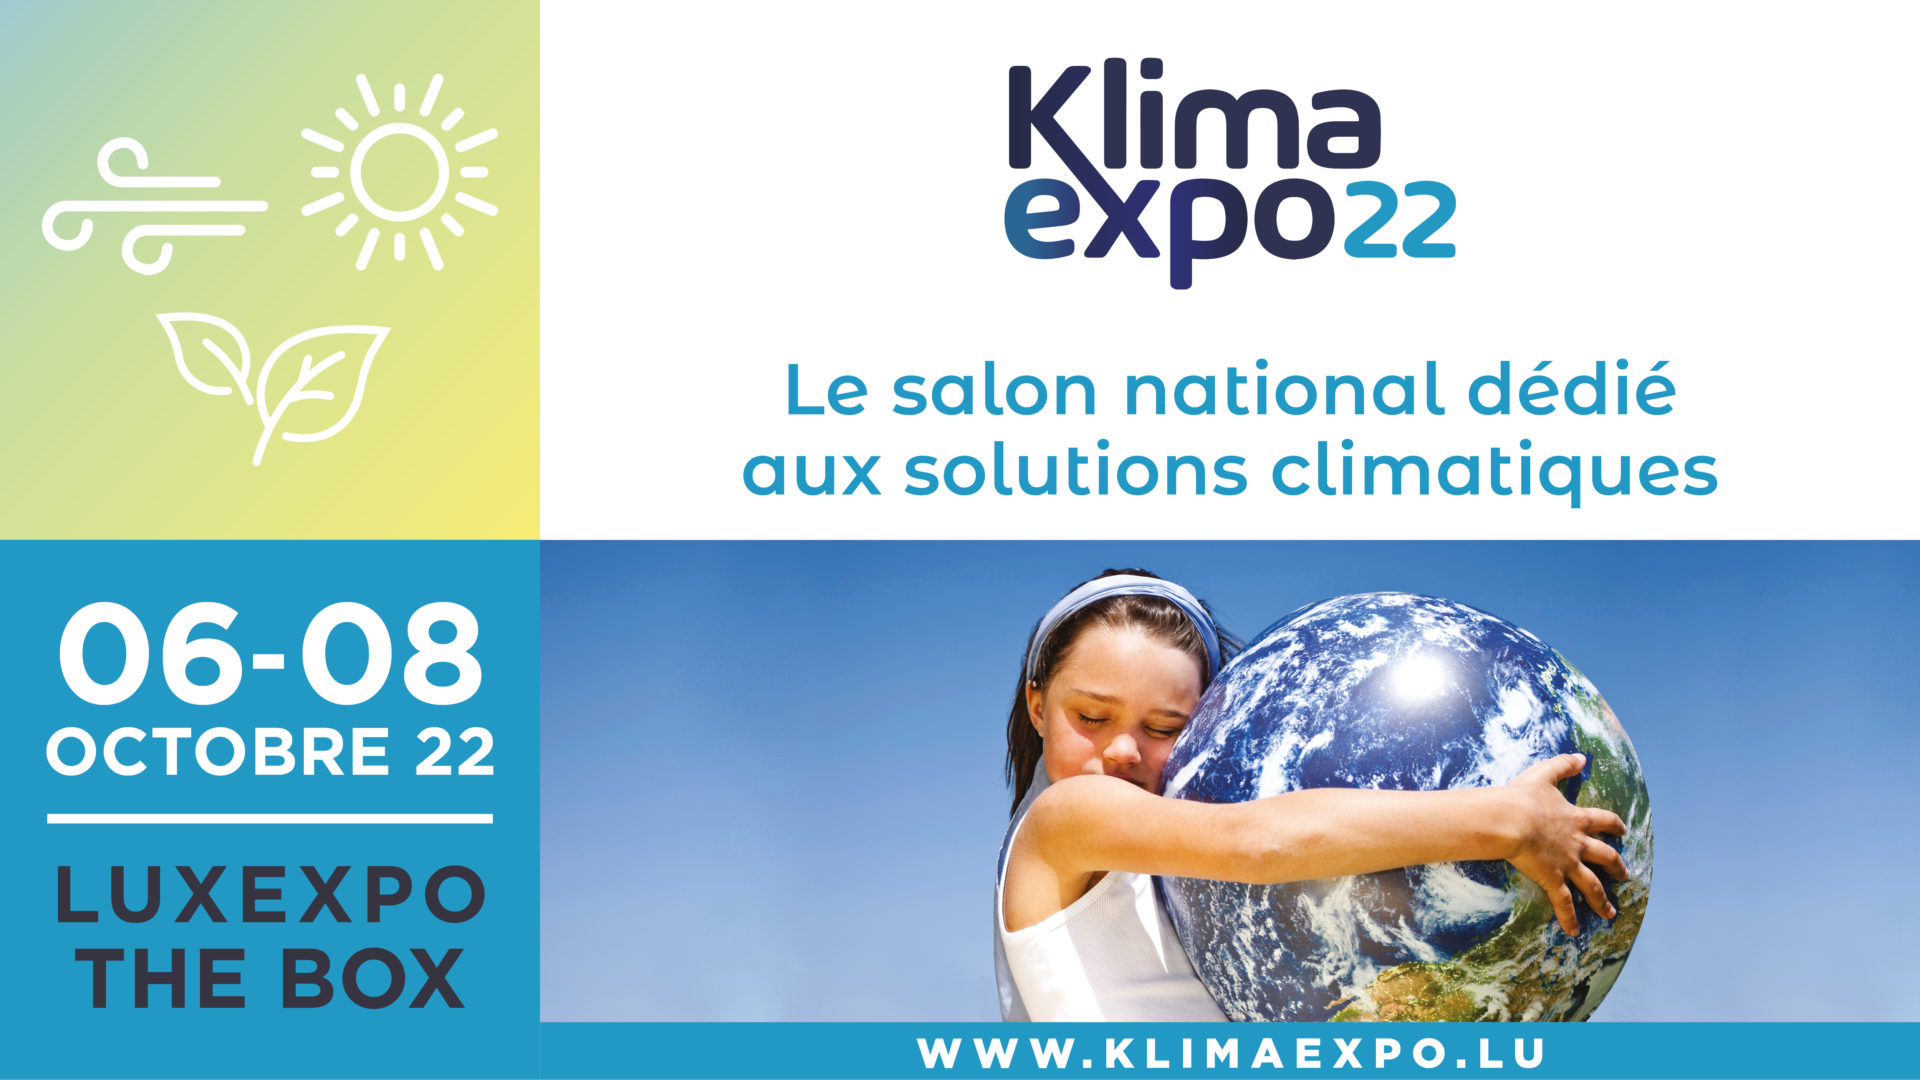 KlimaExpo 2022